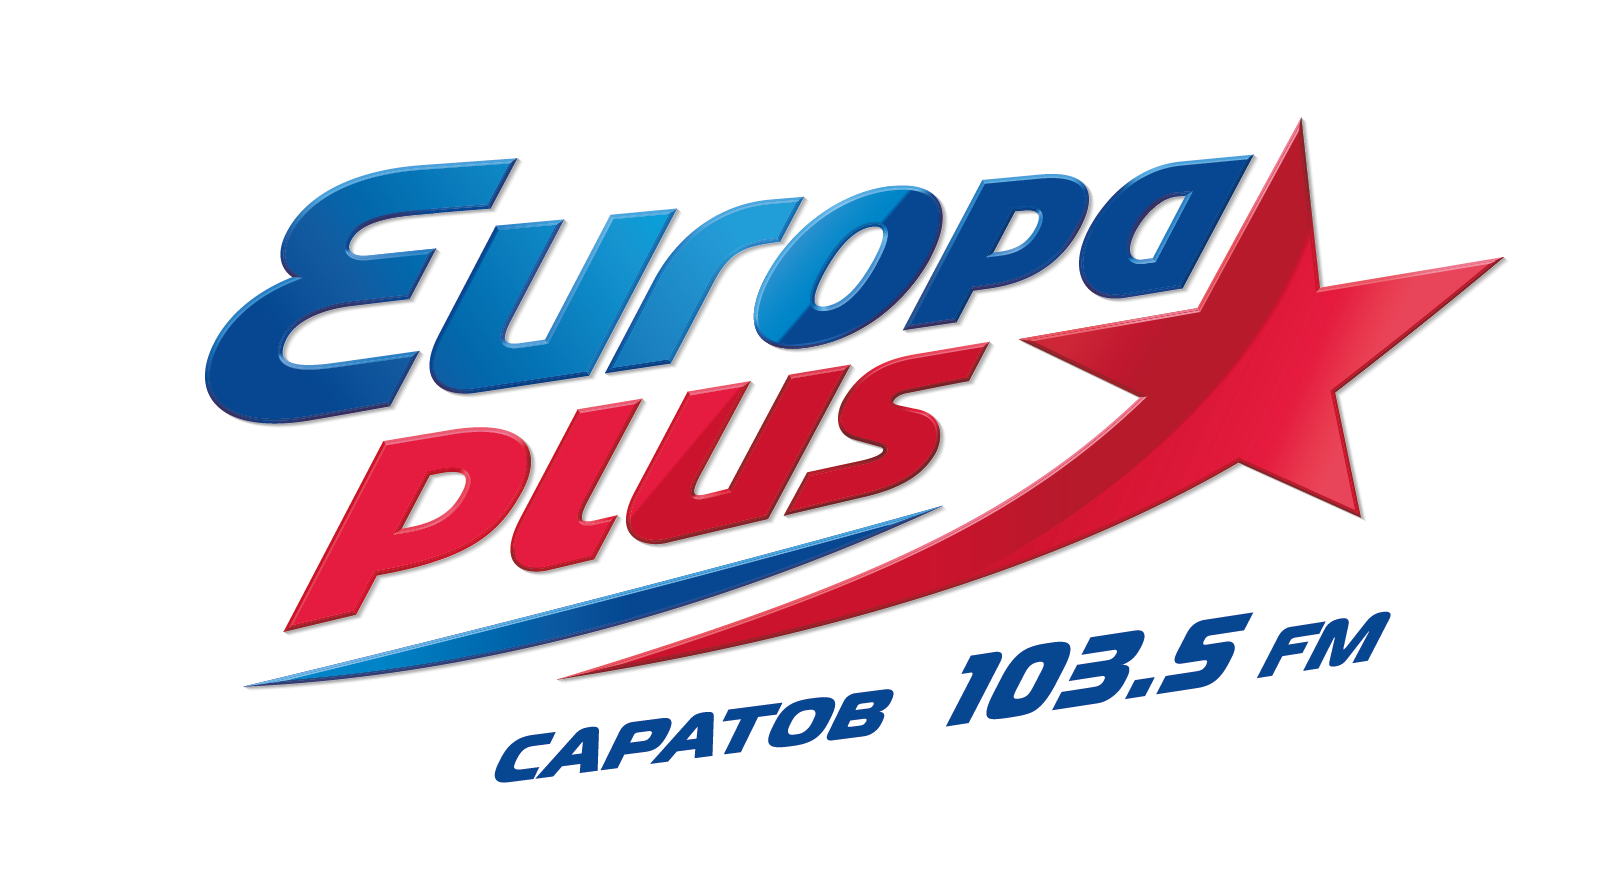 Europa plus 40. Лого радиостанции Европа плюс. Товарный знак Европа плюс. Логотип радиостанции евро плюс. Европа плюс топ.